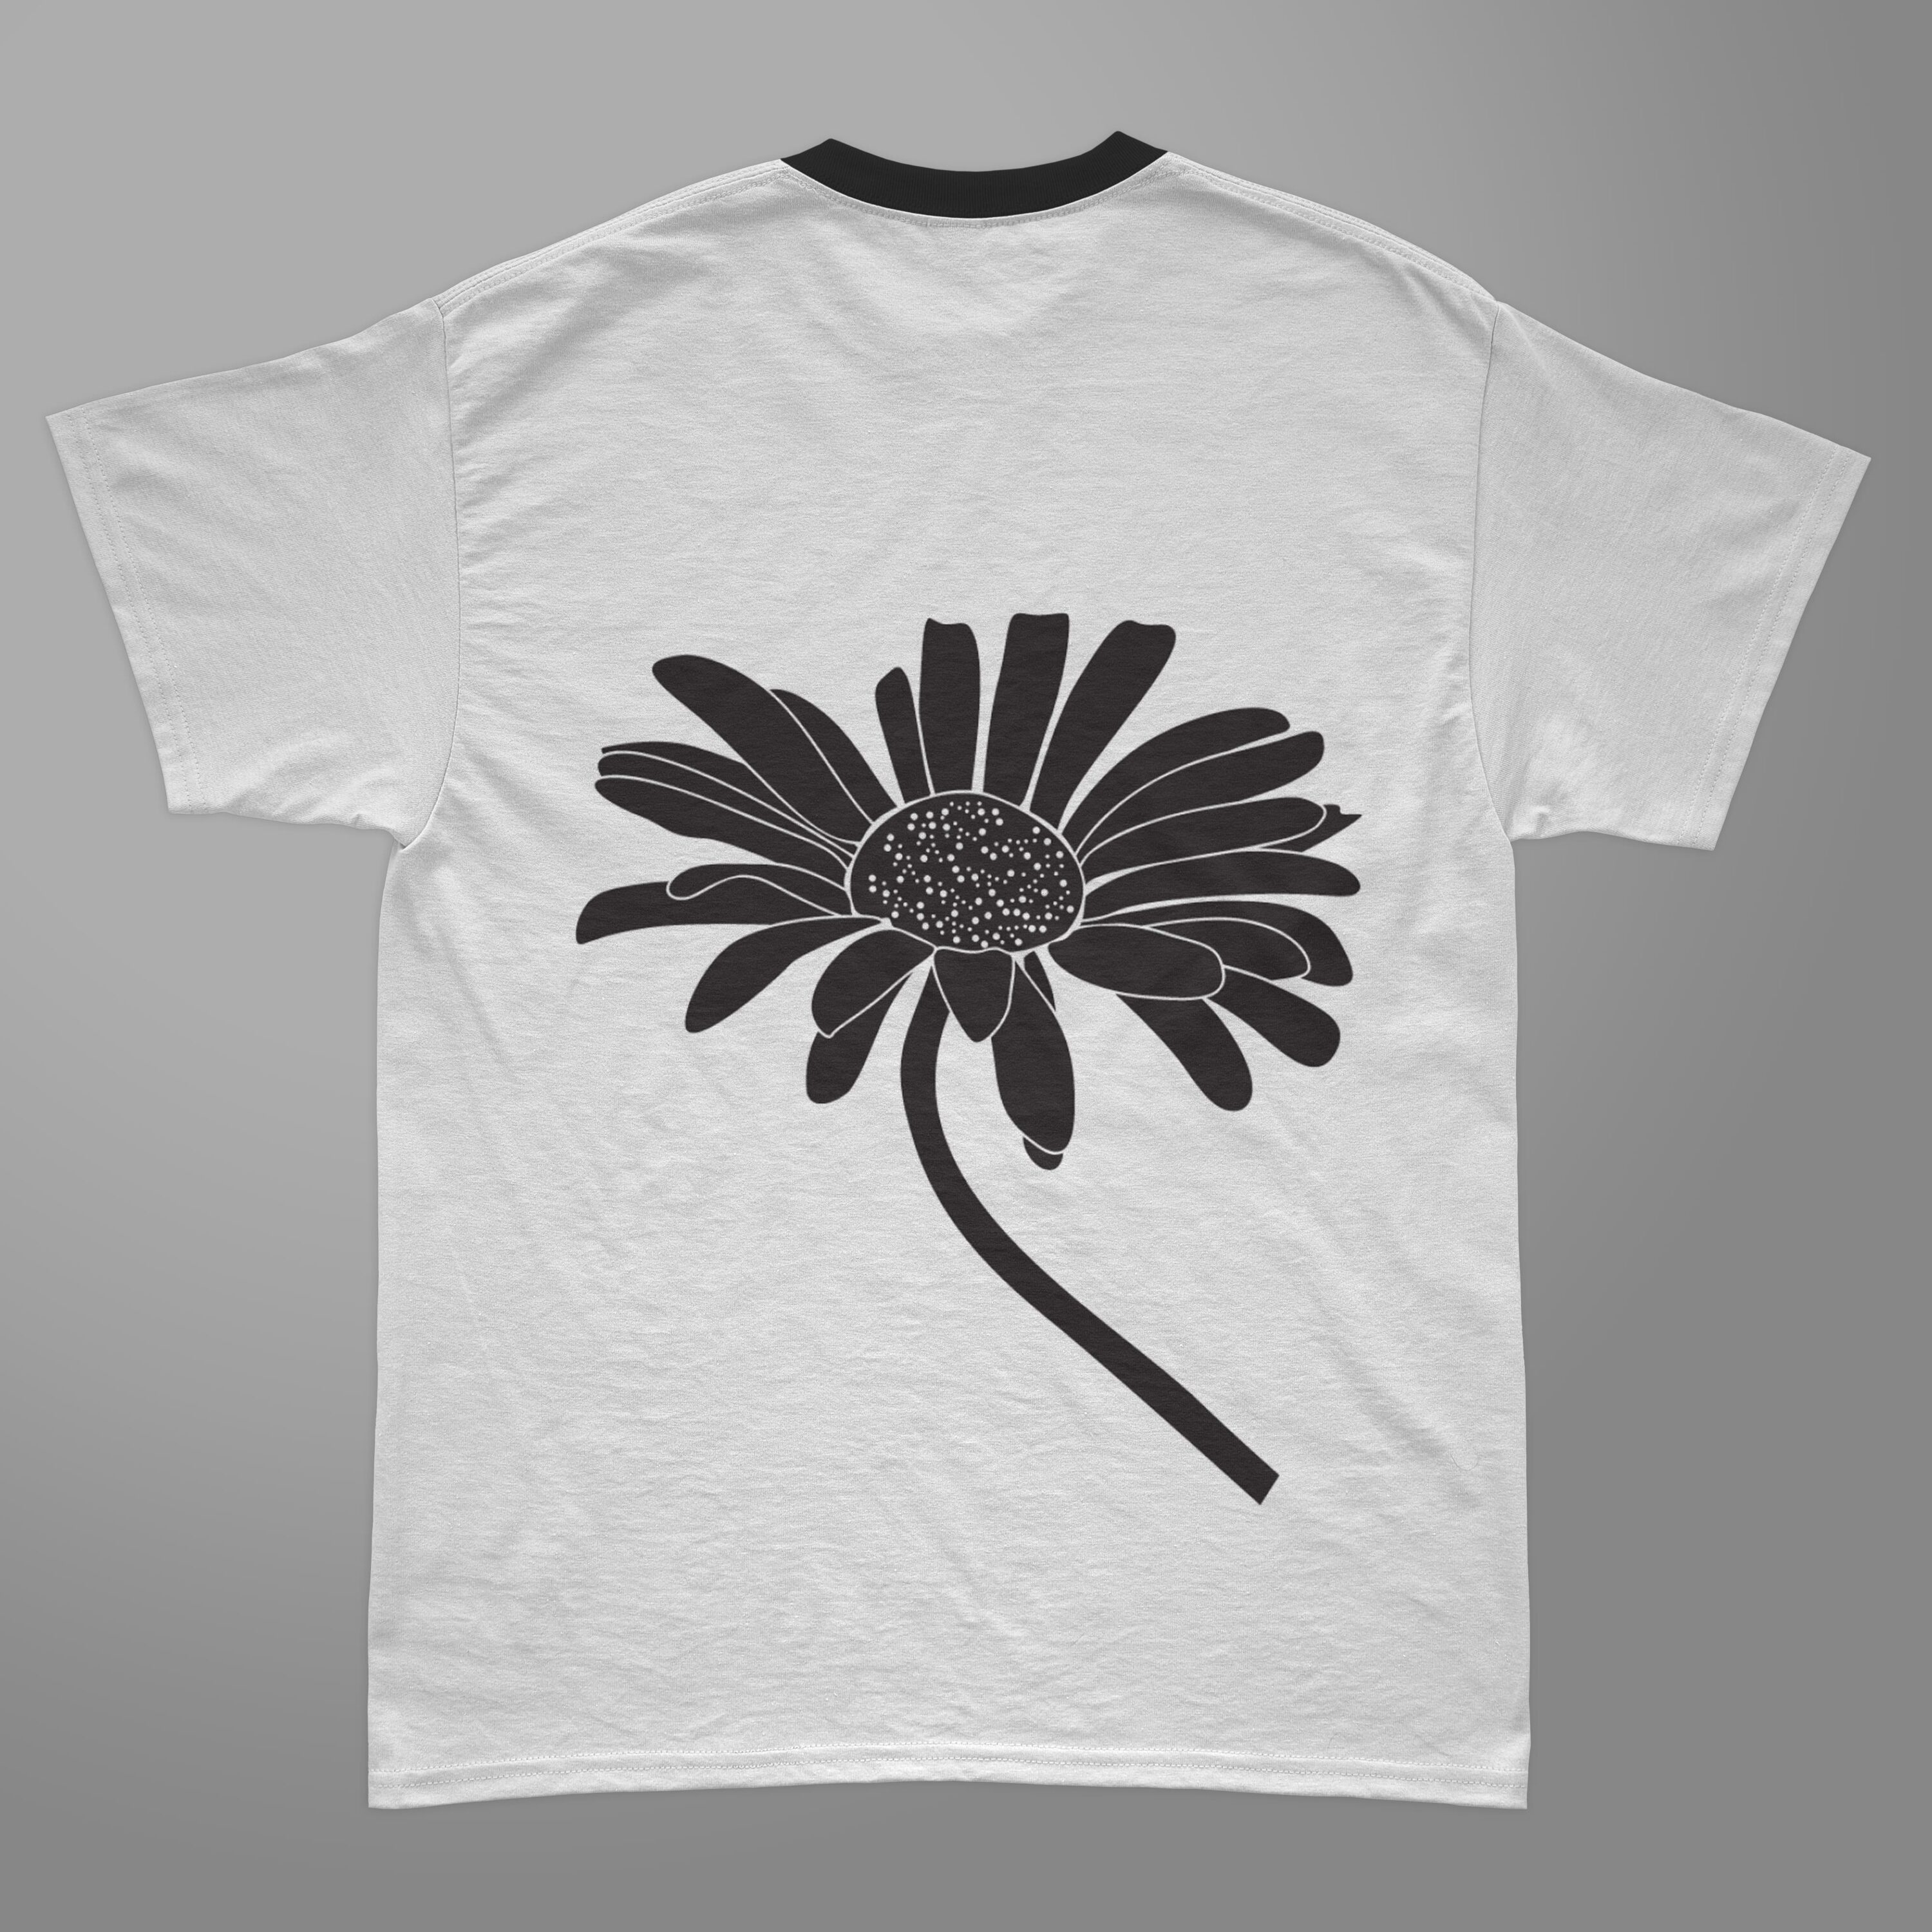 Simple Daisy T-shirt Designs Bundle – MasterBundles